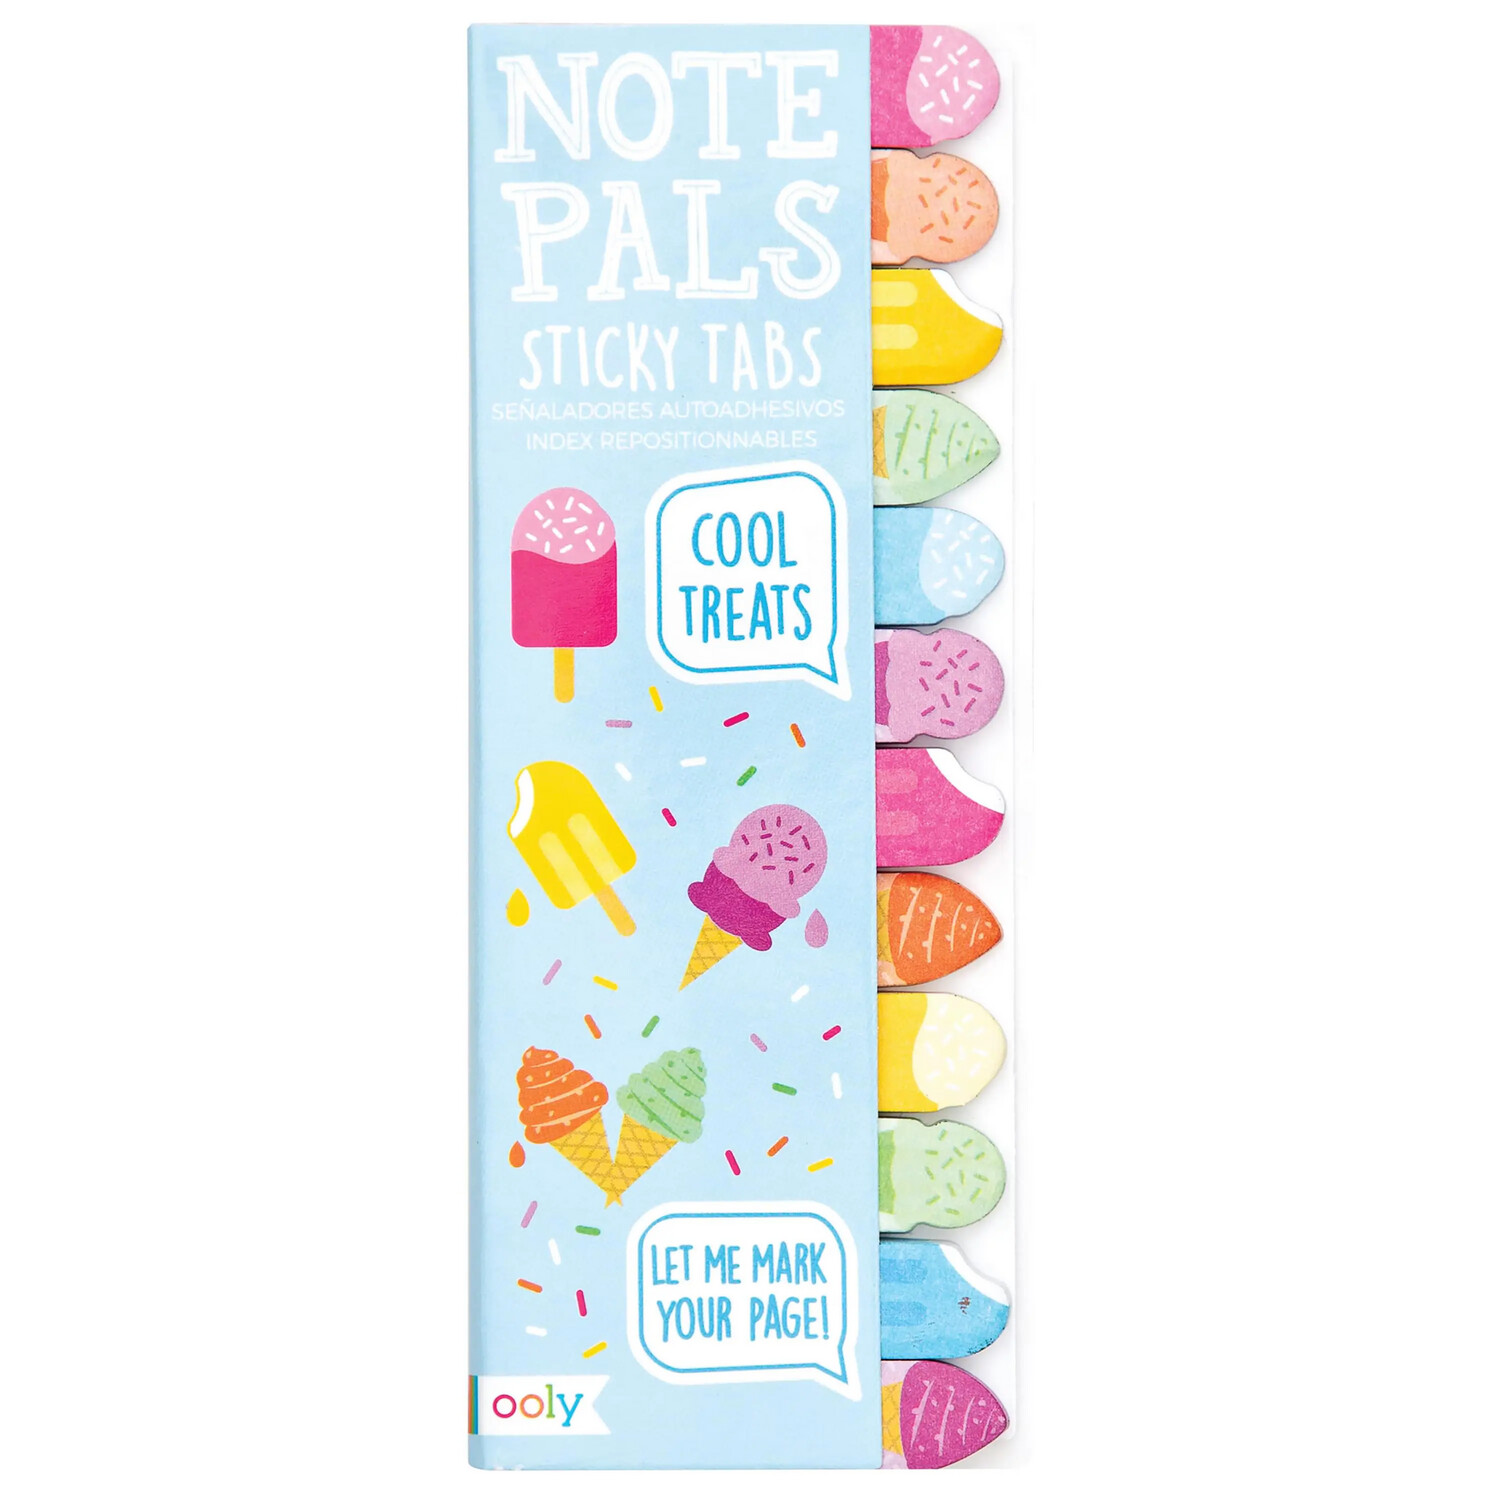 Note pals- Cool treats